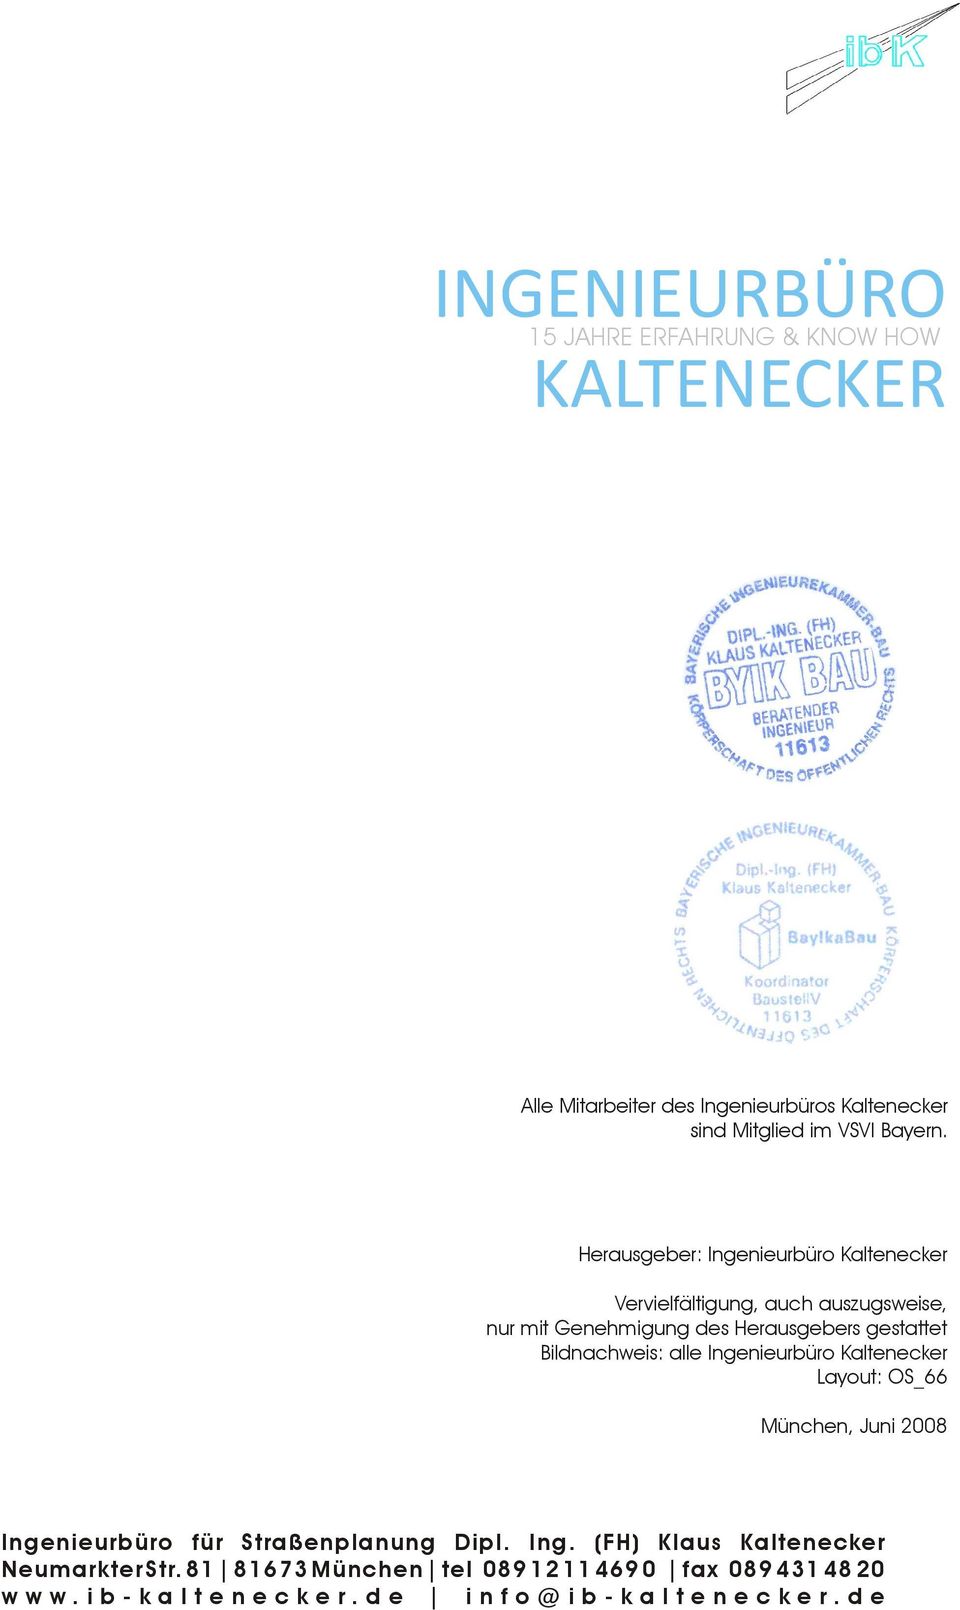 Herausgeber: Ingenieurbüro Kaltenecker Vervielfältigung, auch auszugsweise, nur mit